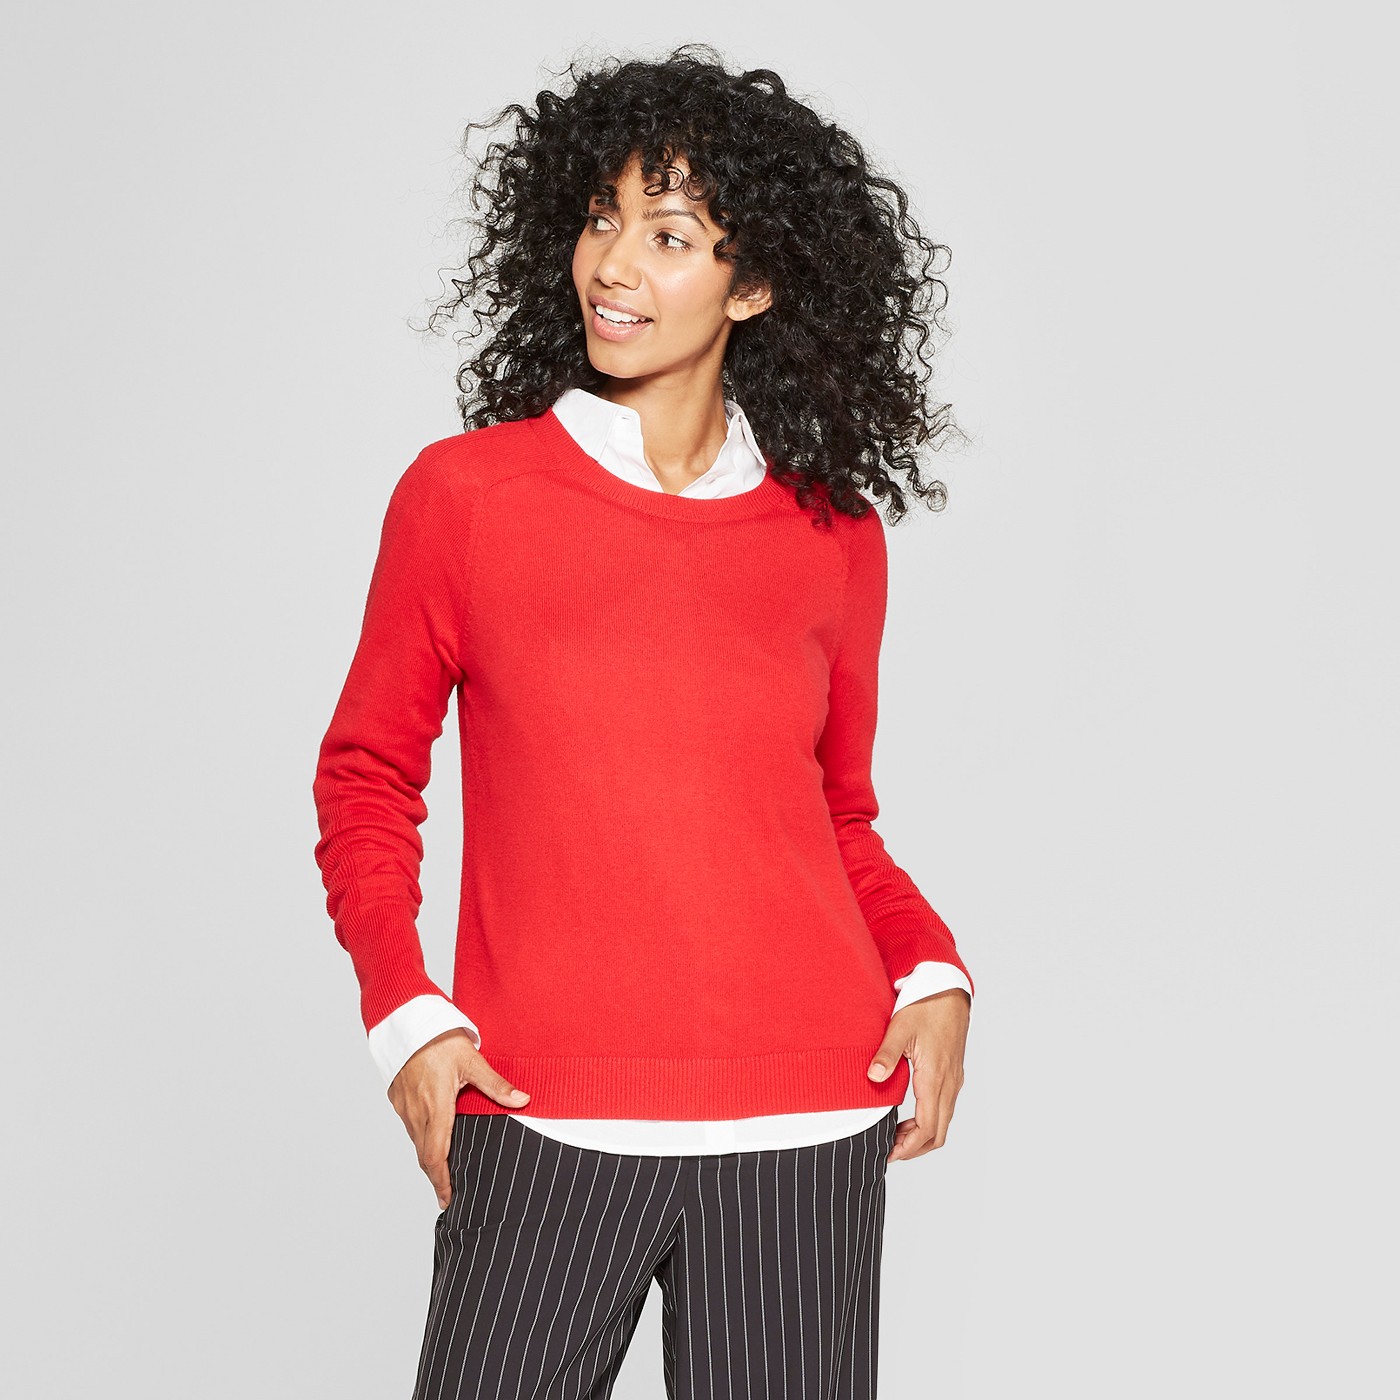 Women's Crewneck Pullover Sweater - A New Dayâ¢ - image 1 of 3